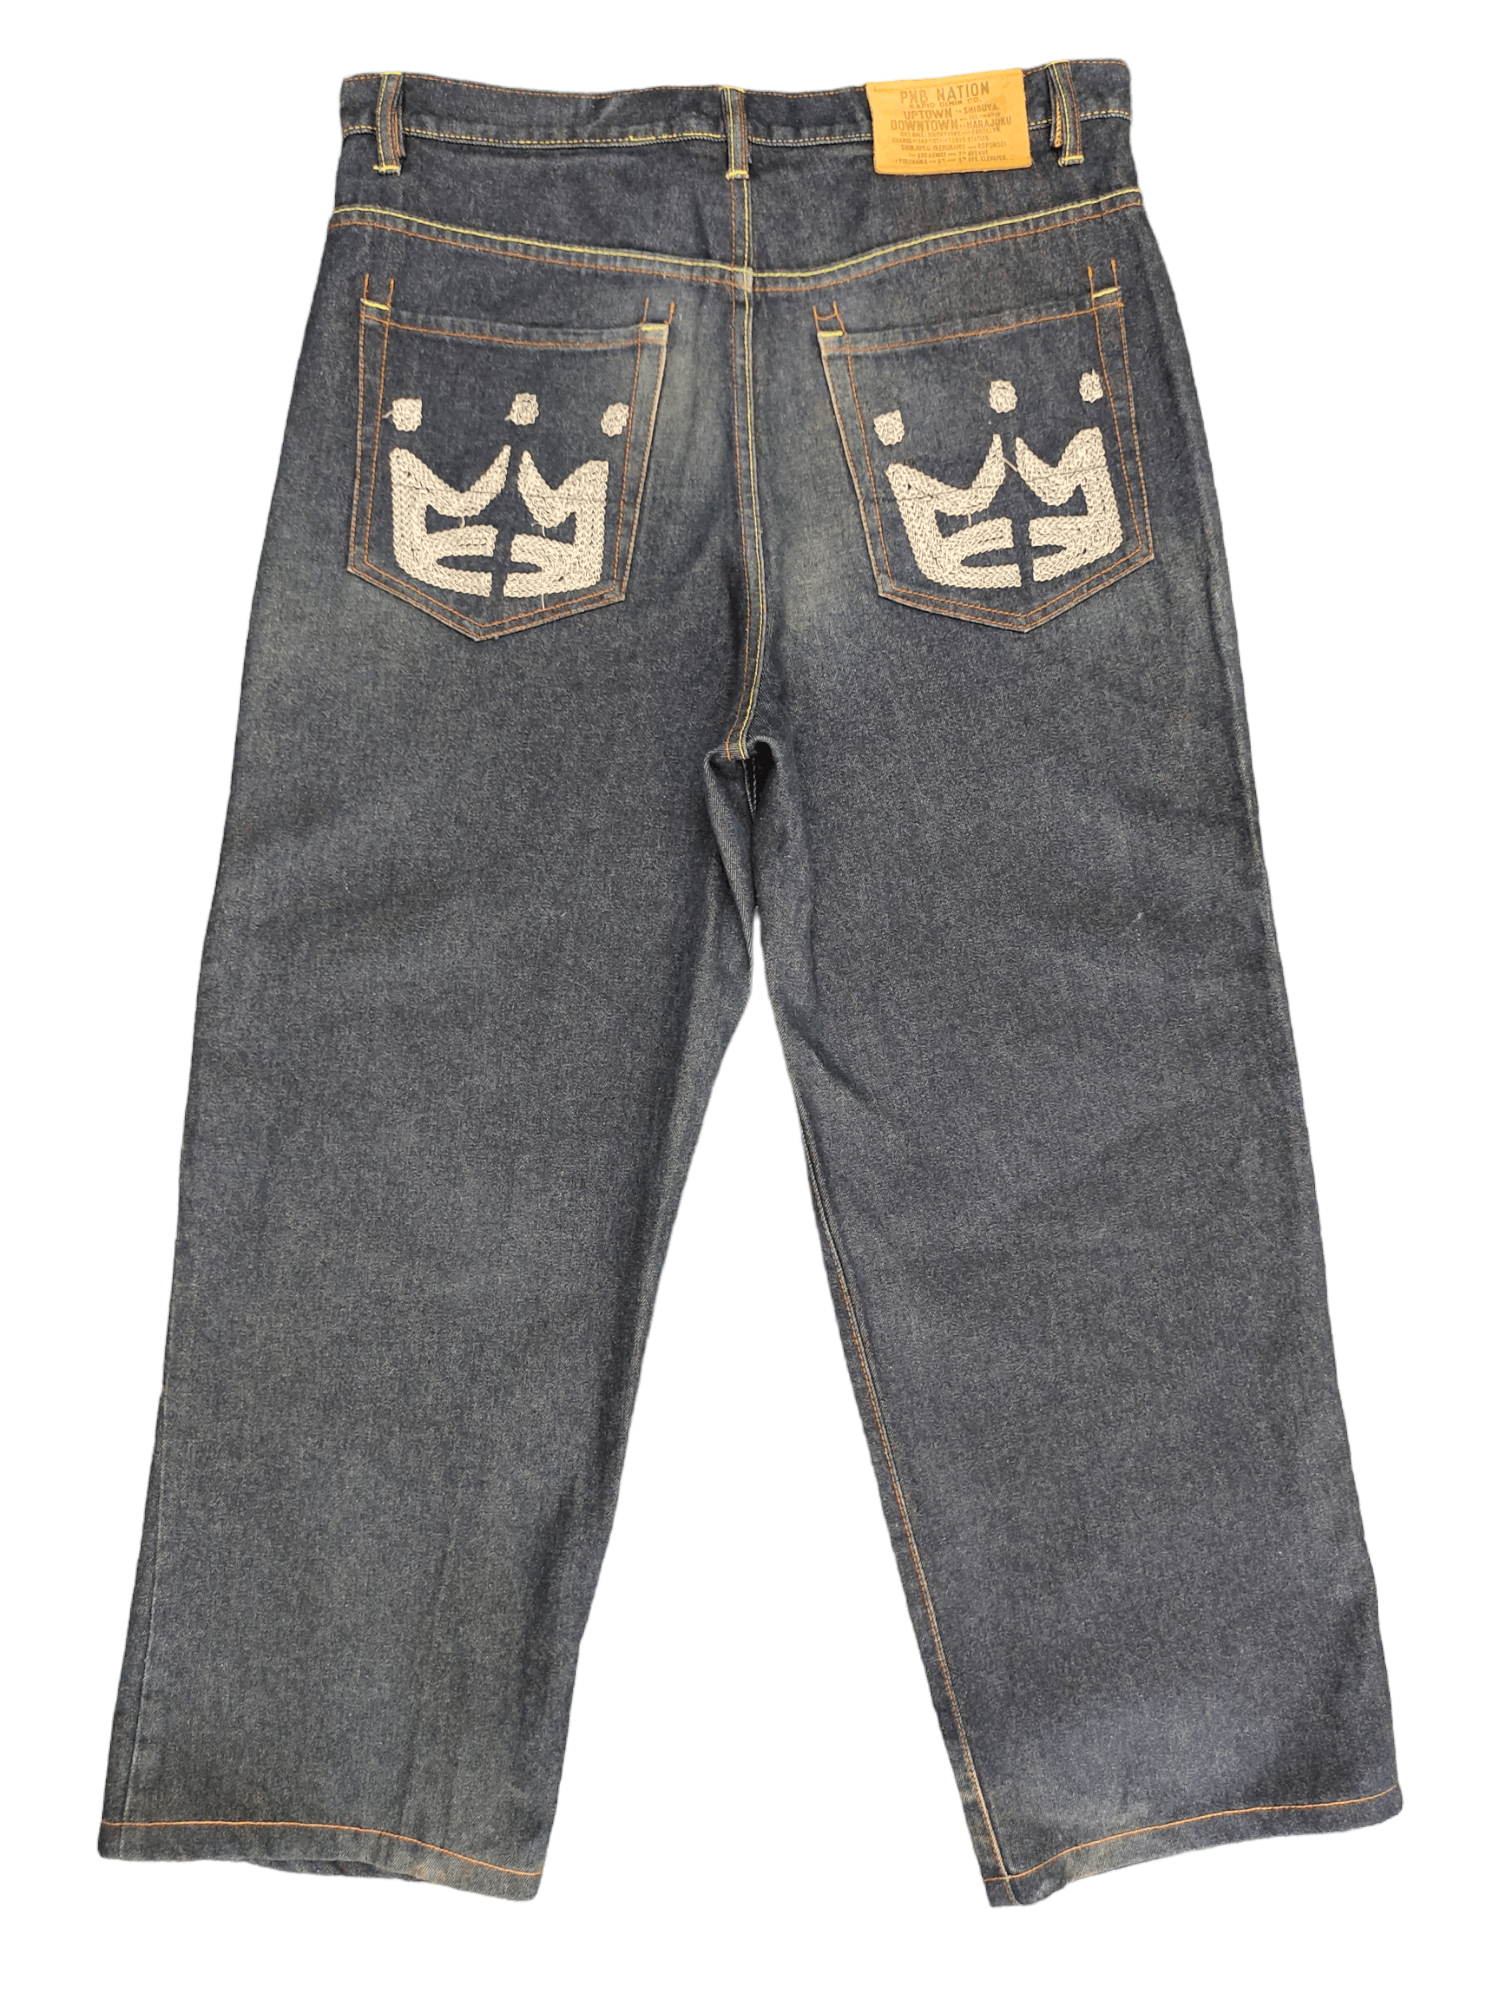 Vintage Baggy Jeans Pnb Nation Embroidered Wide Leg Denim Y2k Jnco ...